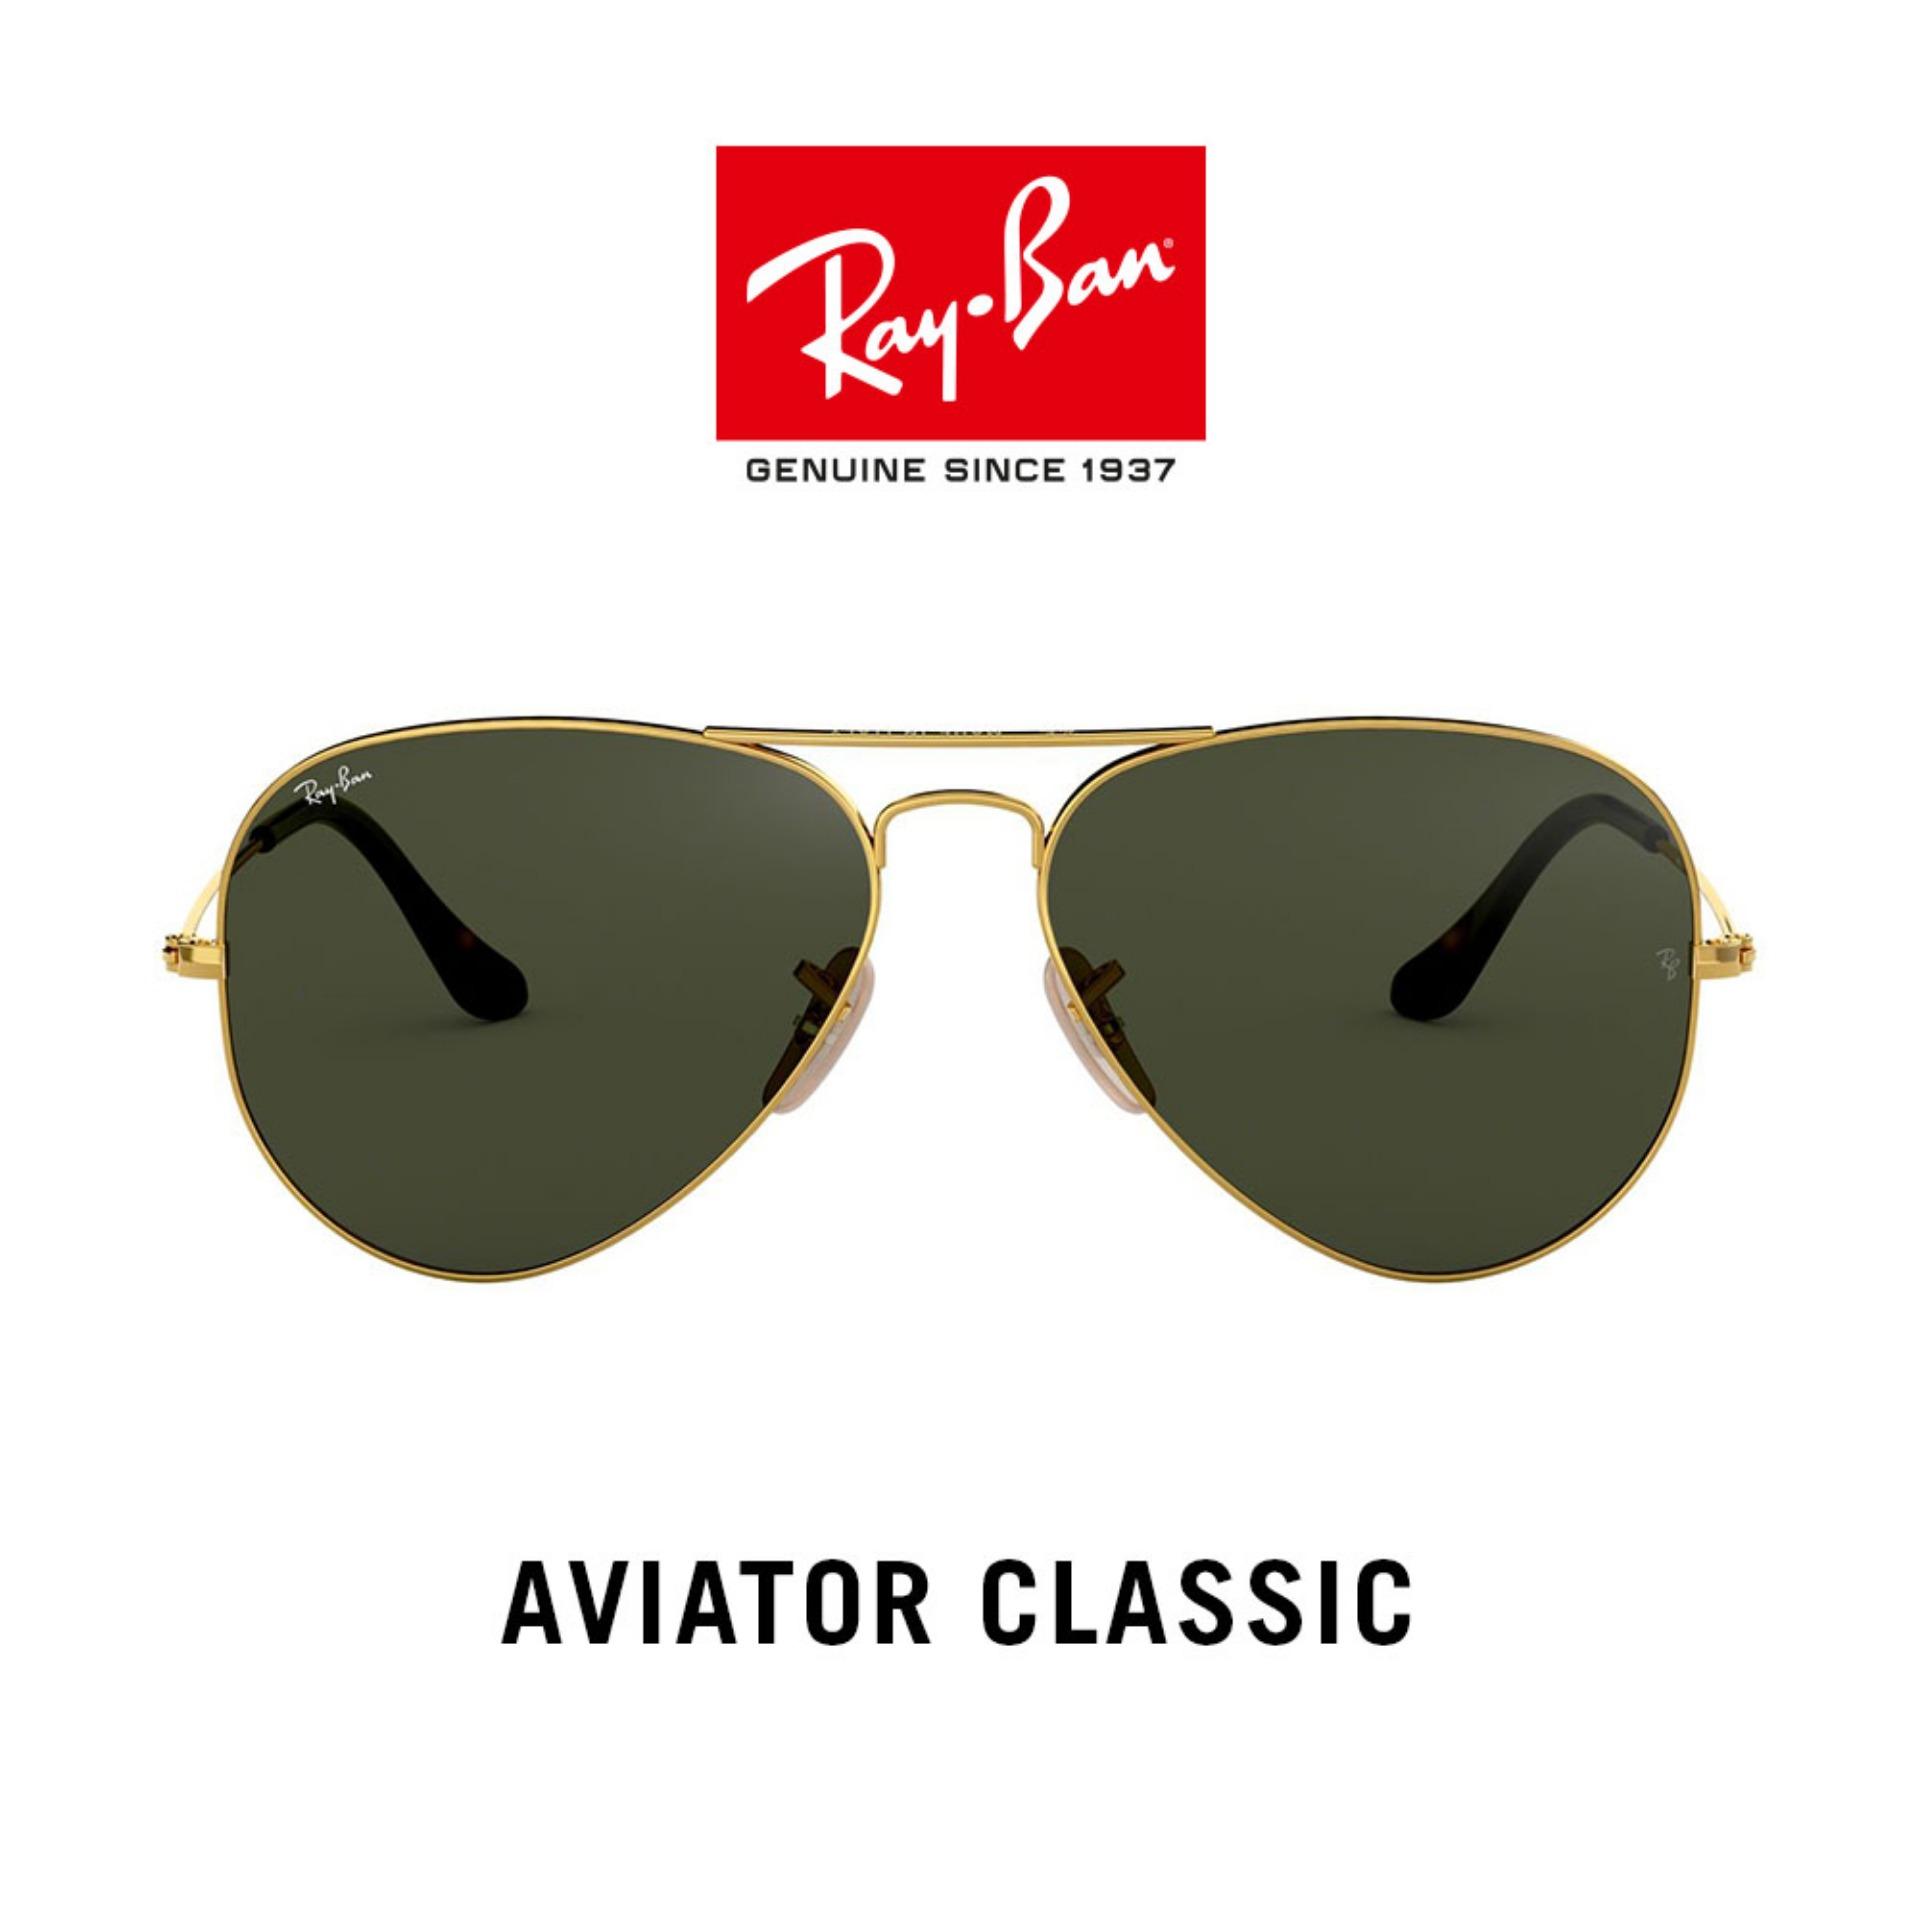 ray ban aviator sunglasses price